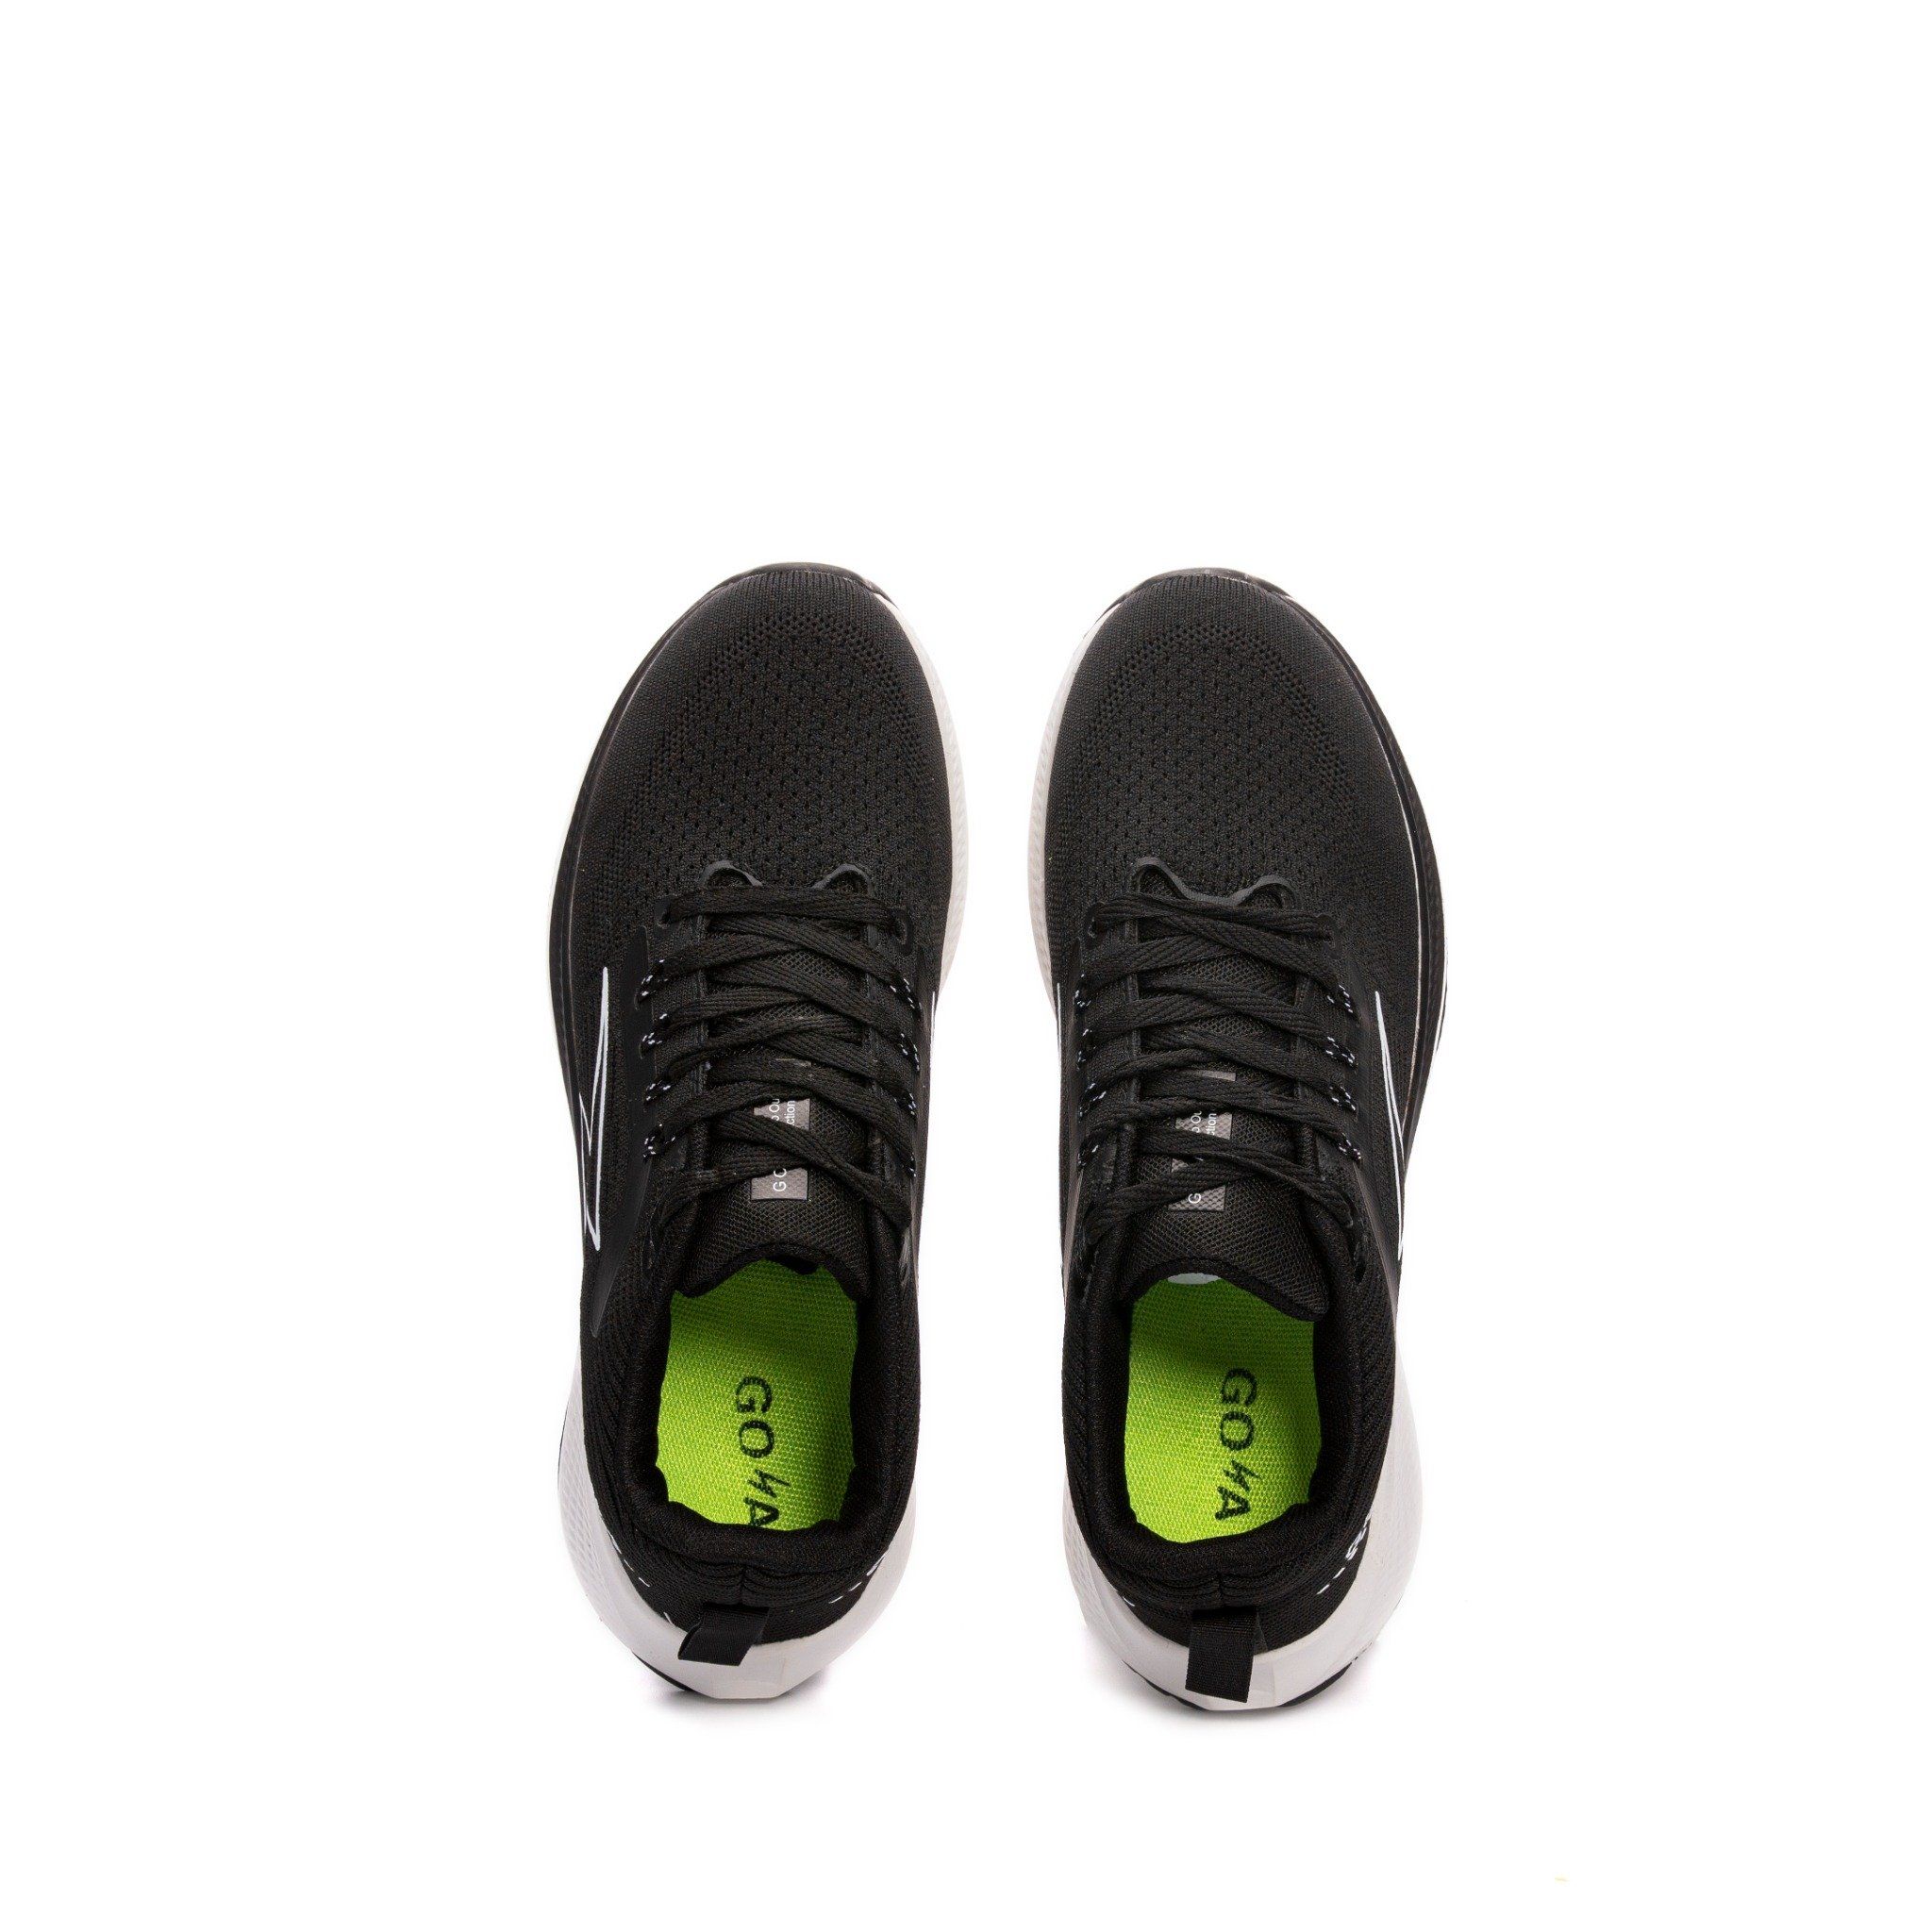  [HOT] Giày Thể Thao Sneaker chính hãng Goya GY221 Đen Trắng 